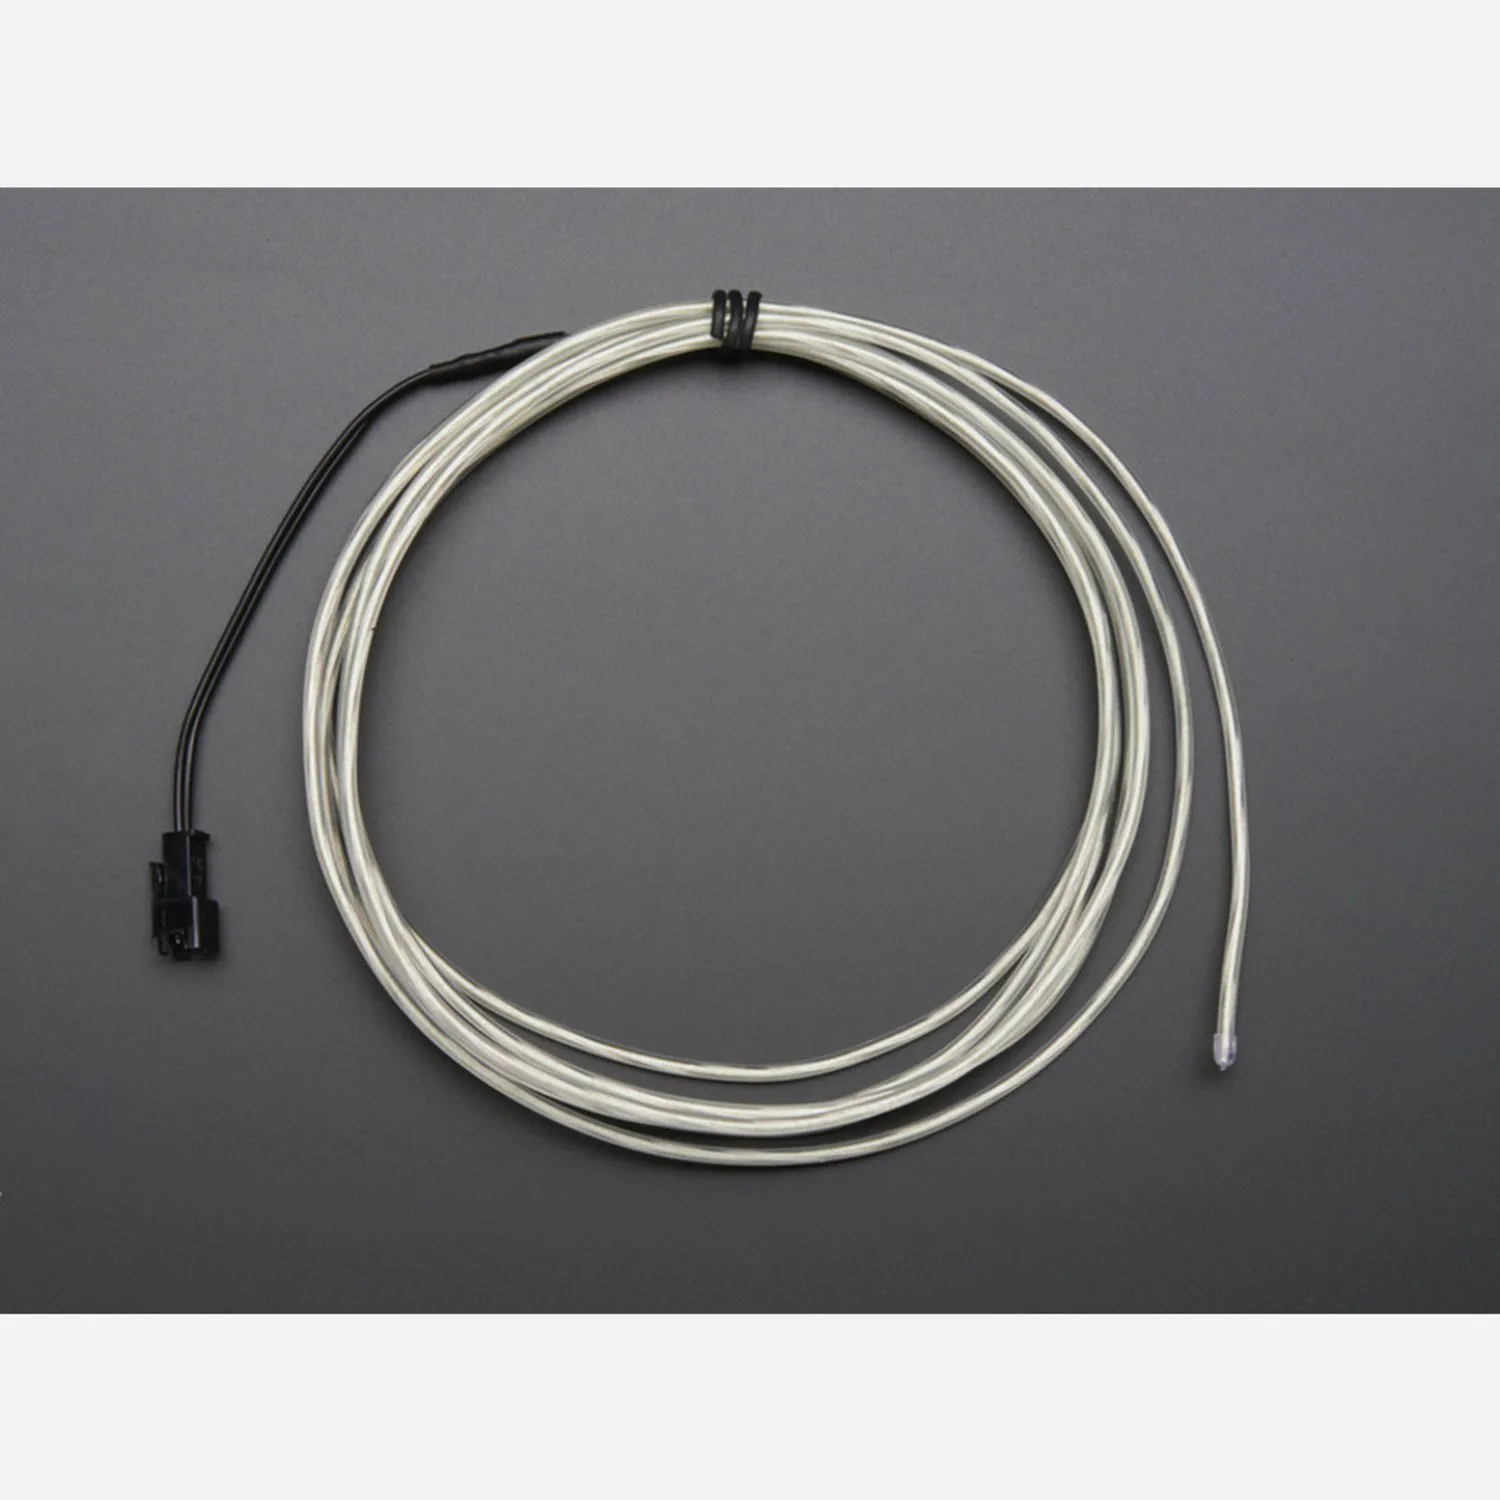 Photo of EL wire starter pack - Aqua 2.5 meter (8.2 ft)